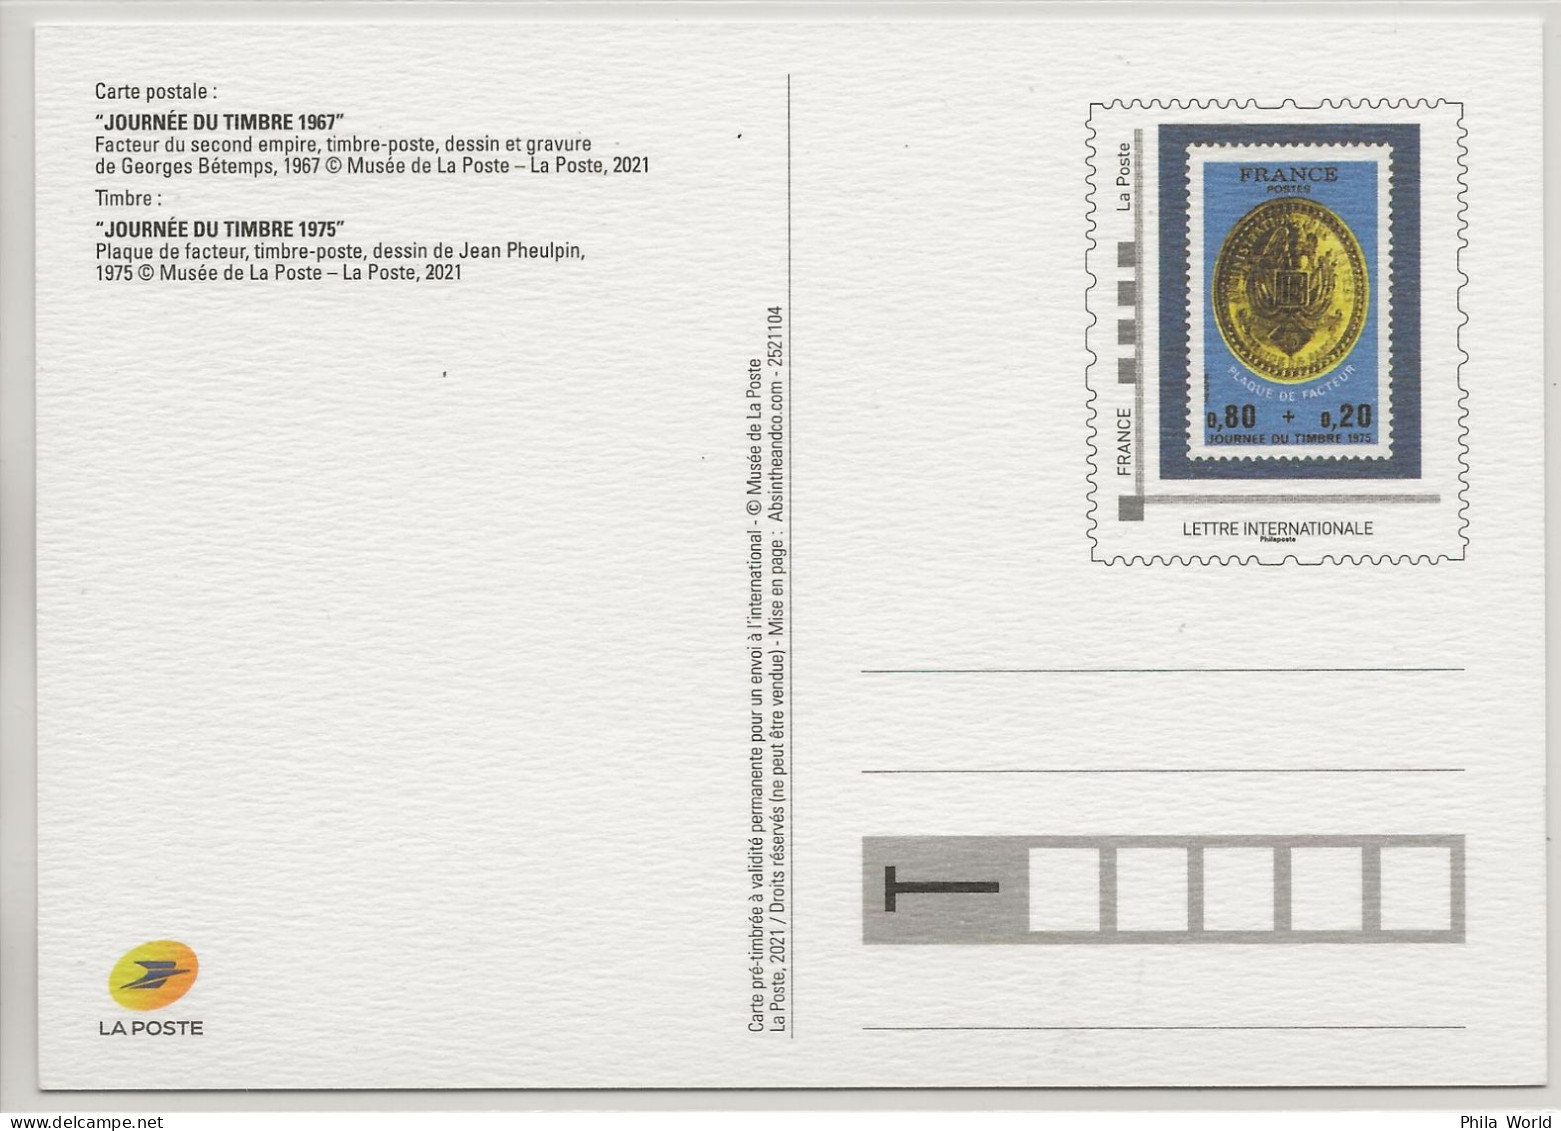 FRANCE 2021 Journée Timbre 1967 Facteur Second Empire Entier Postal PàP TSC La Poste Musée Plaque 1975 Postal Stationery - Prêts-à-poster: TSC Et Repiquages Semi-officiels